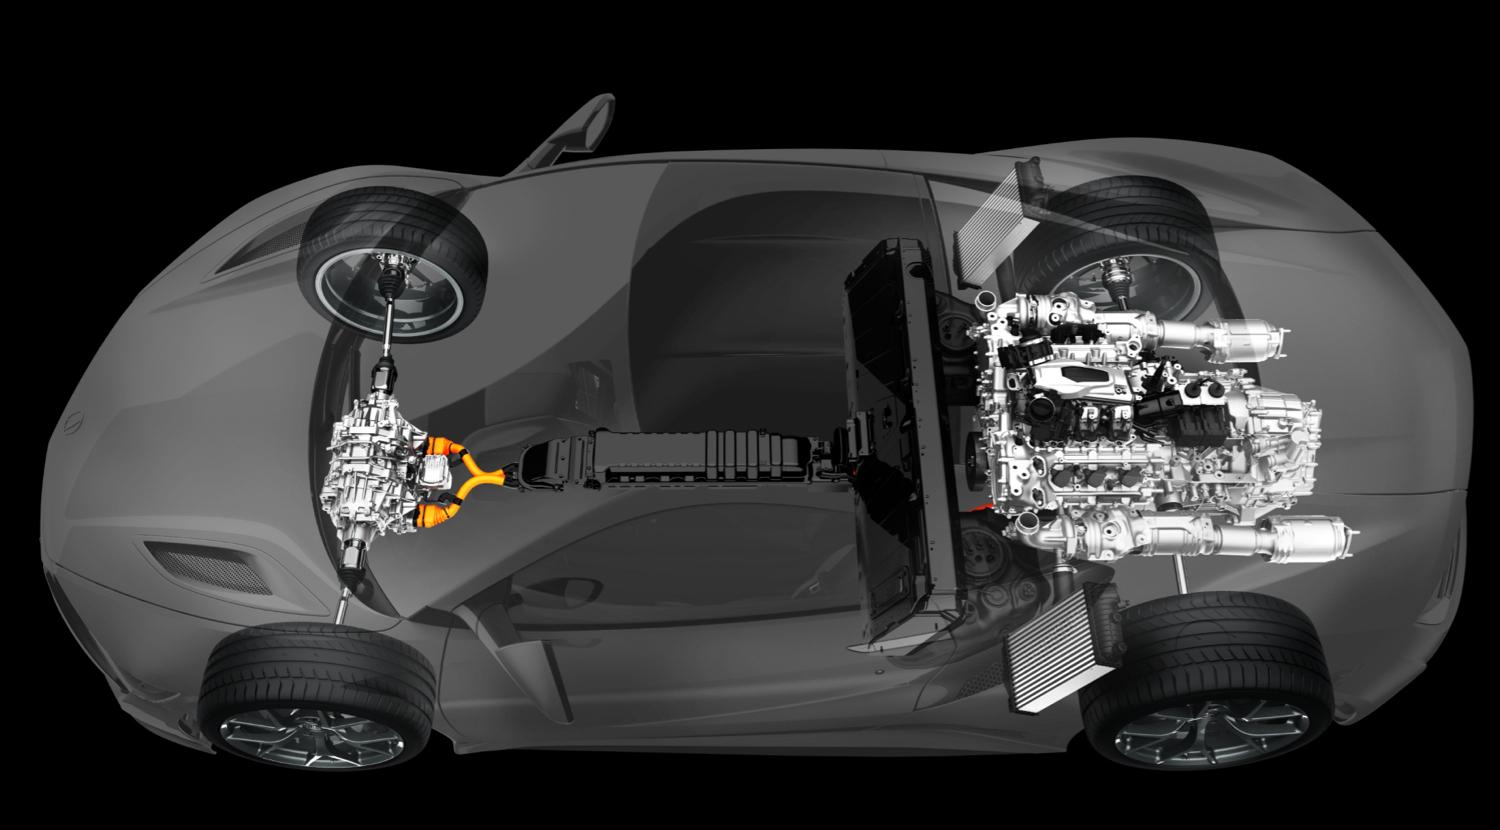 2016 Acura NSX Power Unit Layout